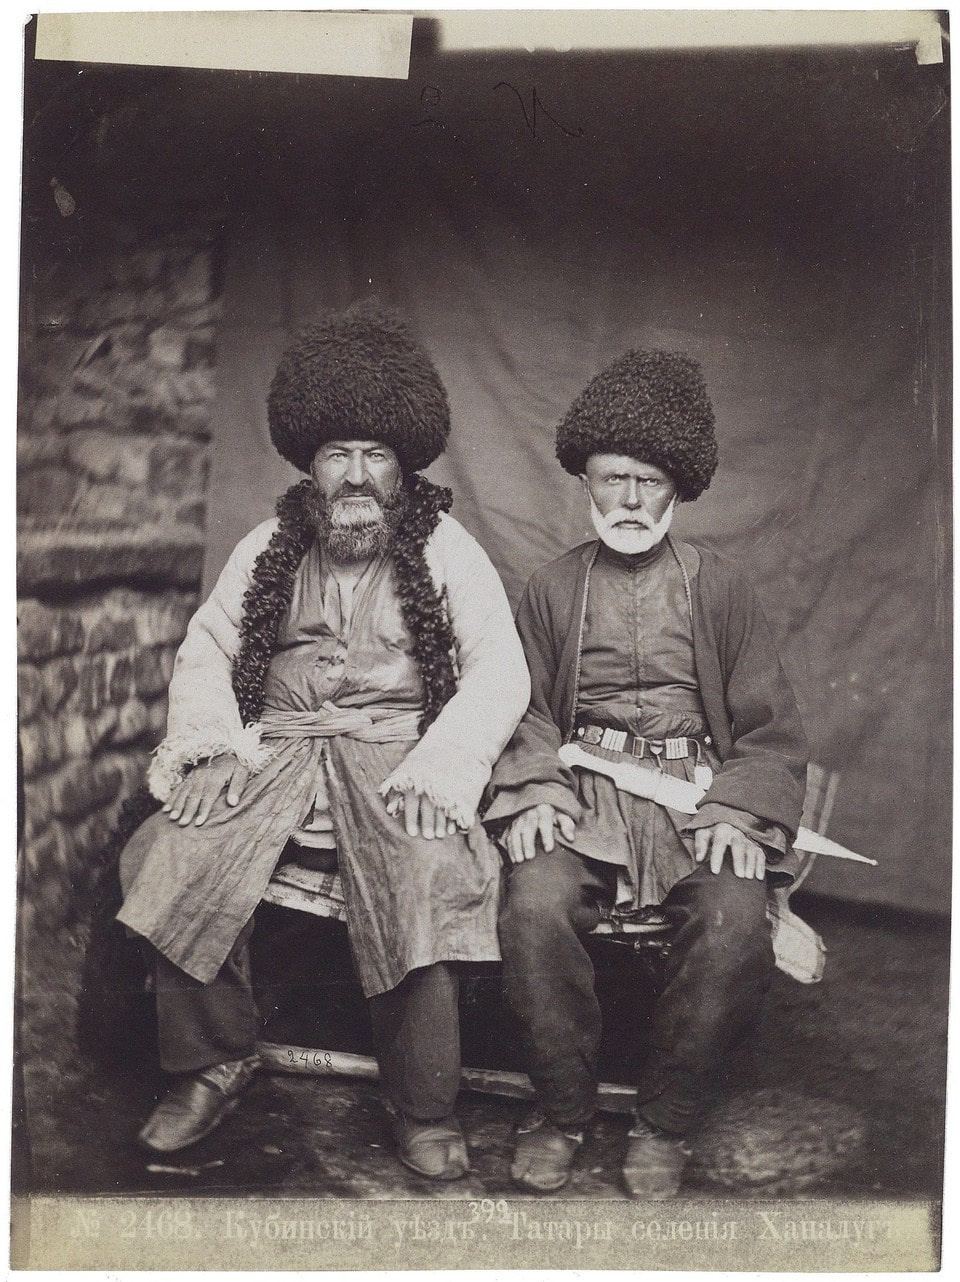 Так выглядели жители села Хыналыг в конце XIX века